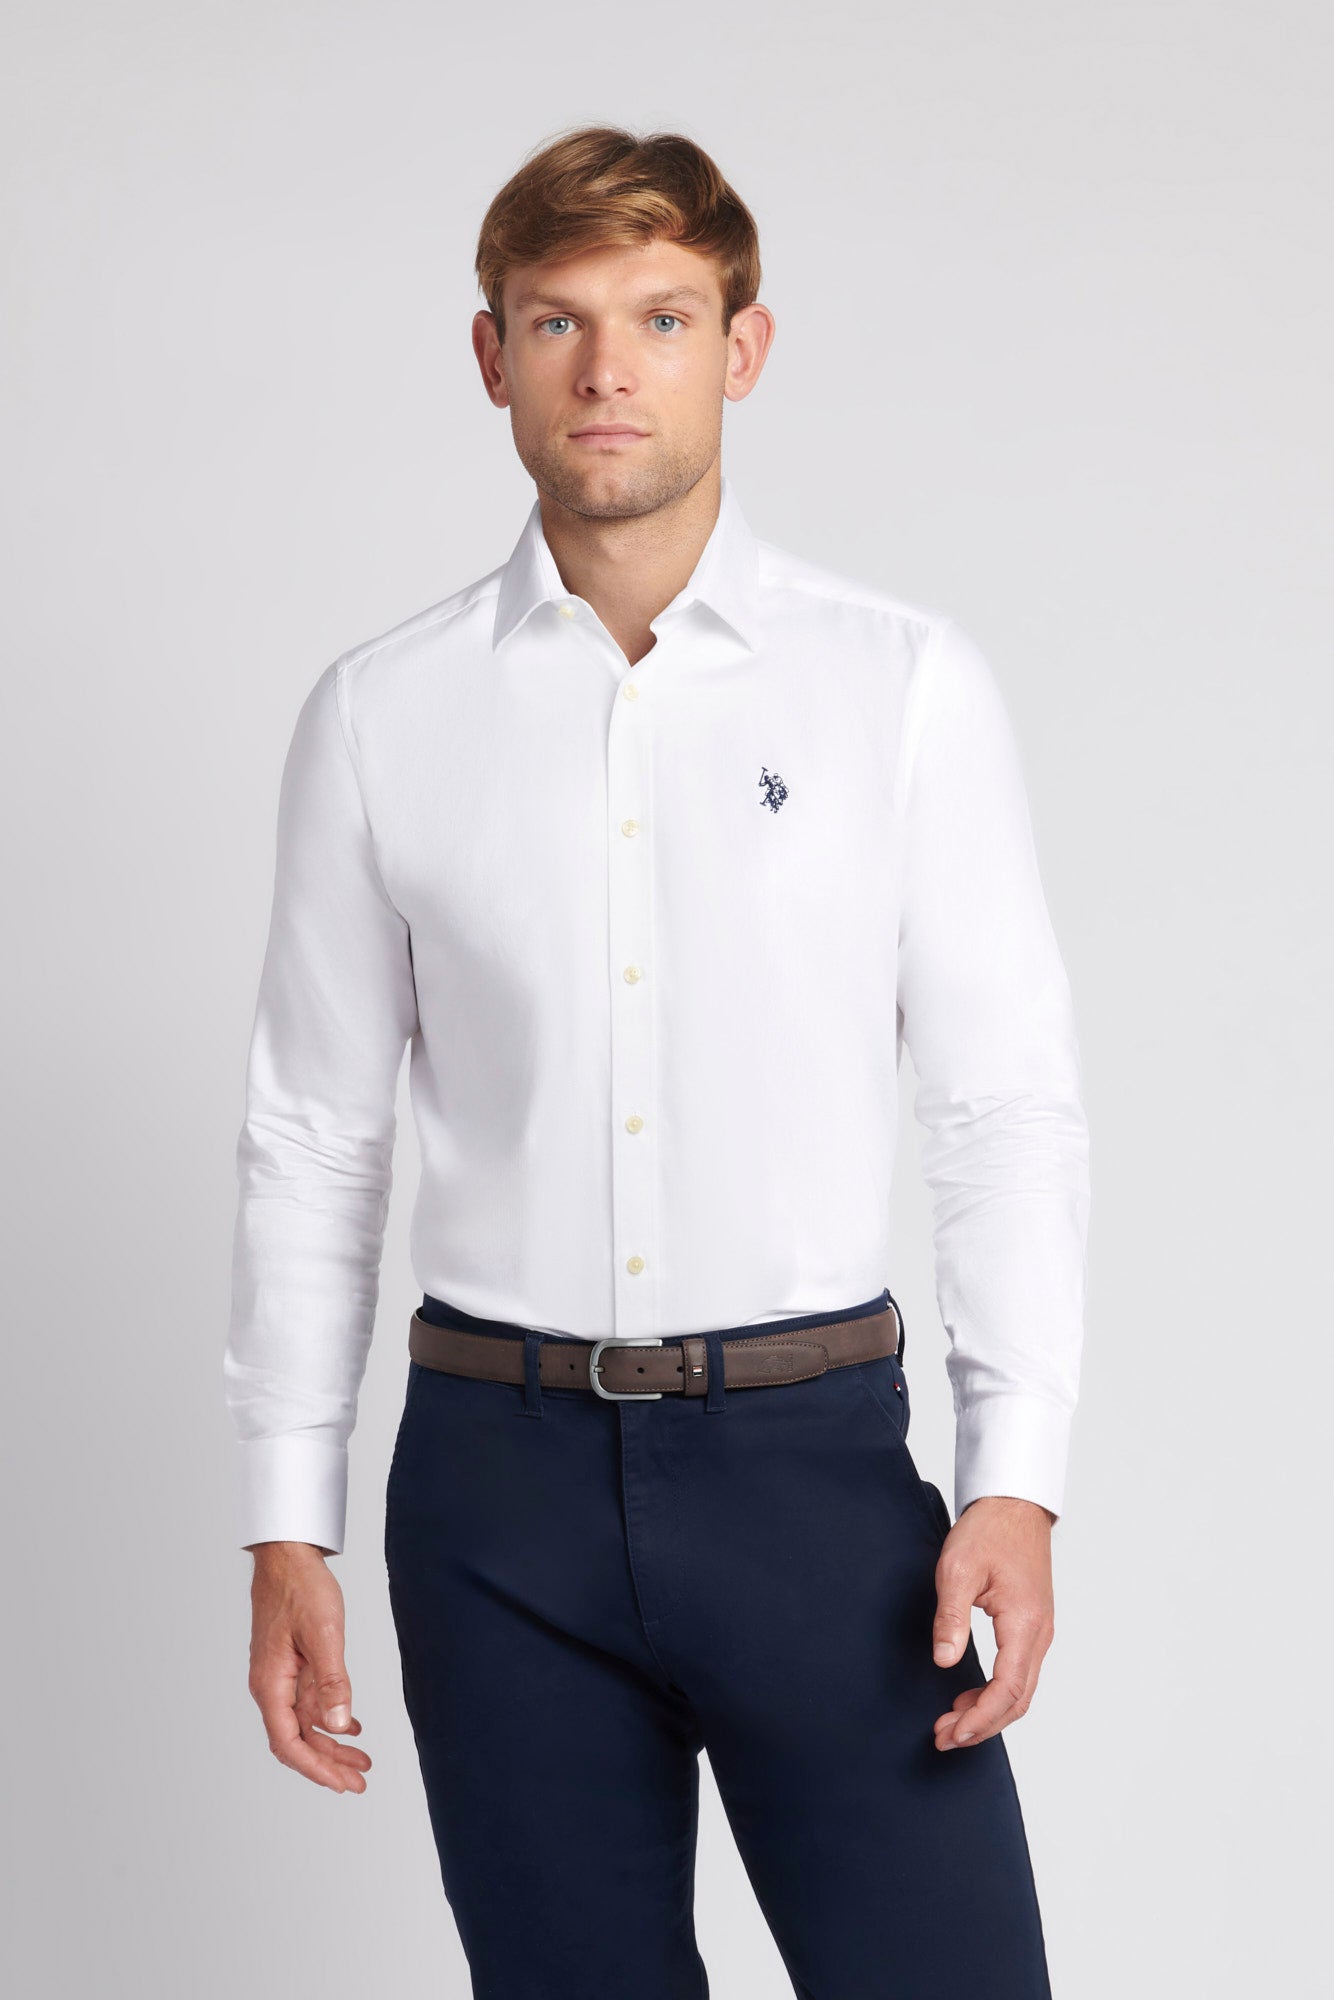 U.S. Polo Assn. Mens Long Sleeve Herringbone Twill Shirt in White